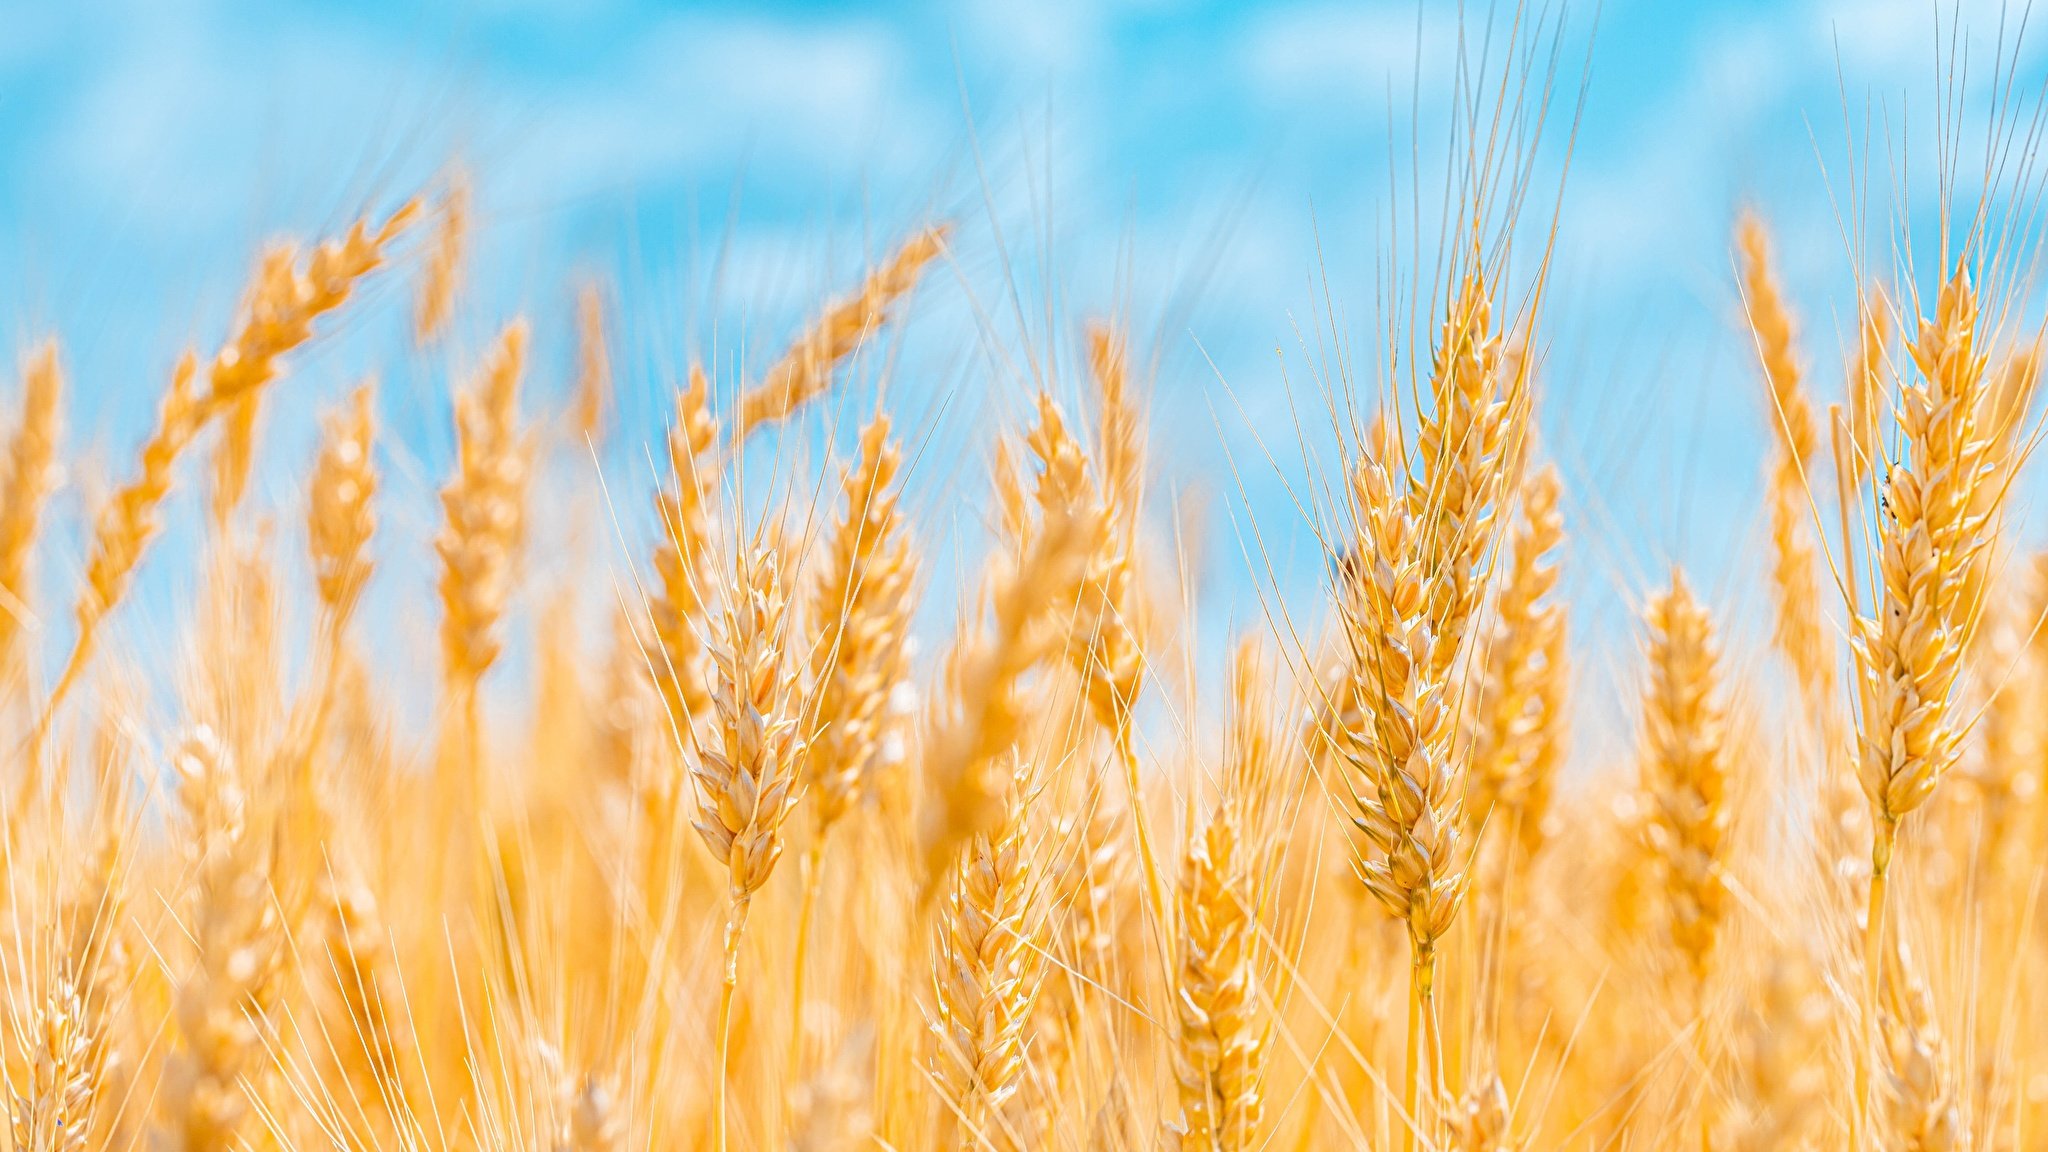  Способ повысить устойчивость пшеницы к засухе нашли российские ученые